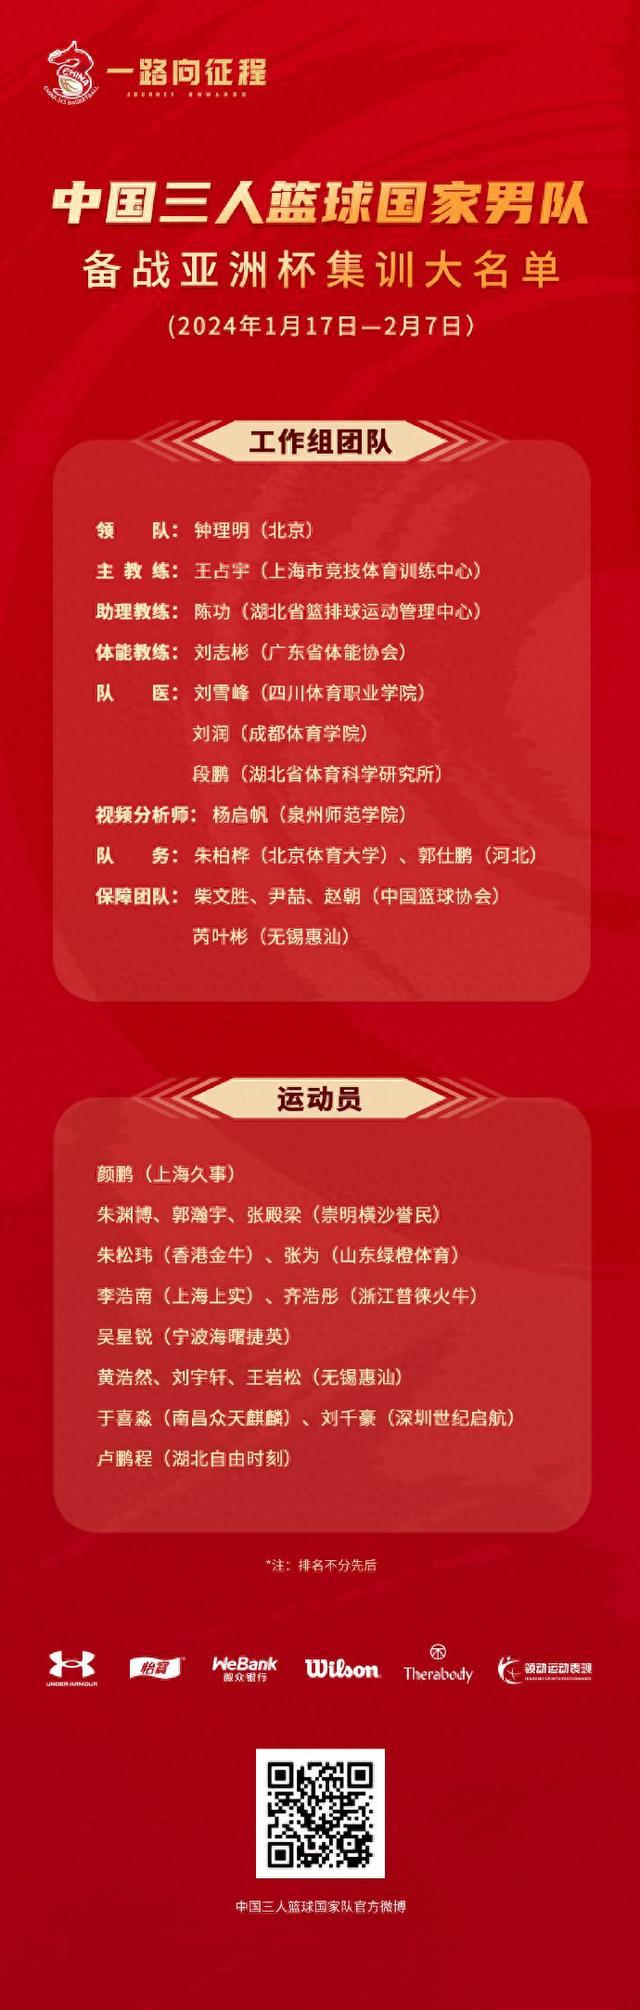 中国三人篮球国家队公布男篮集训名单(1)